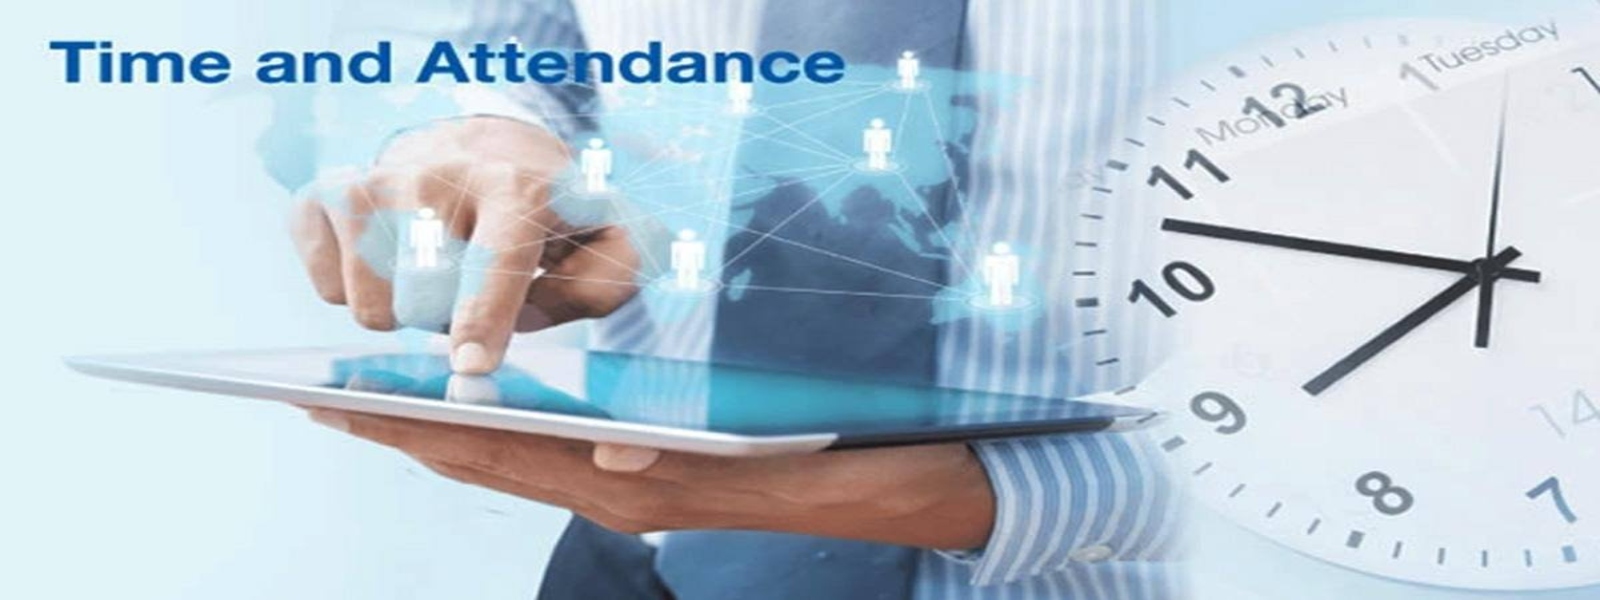 Attendance Management